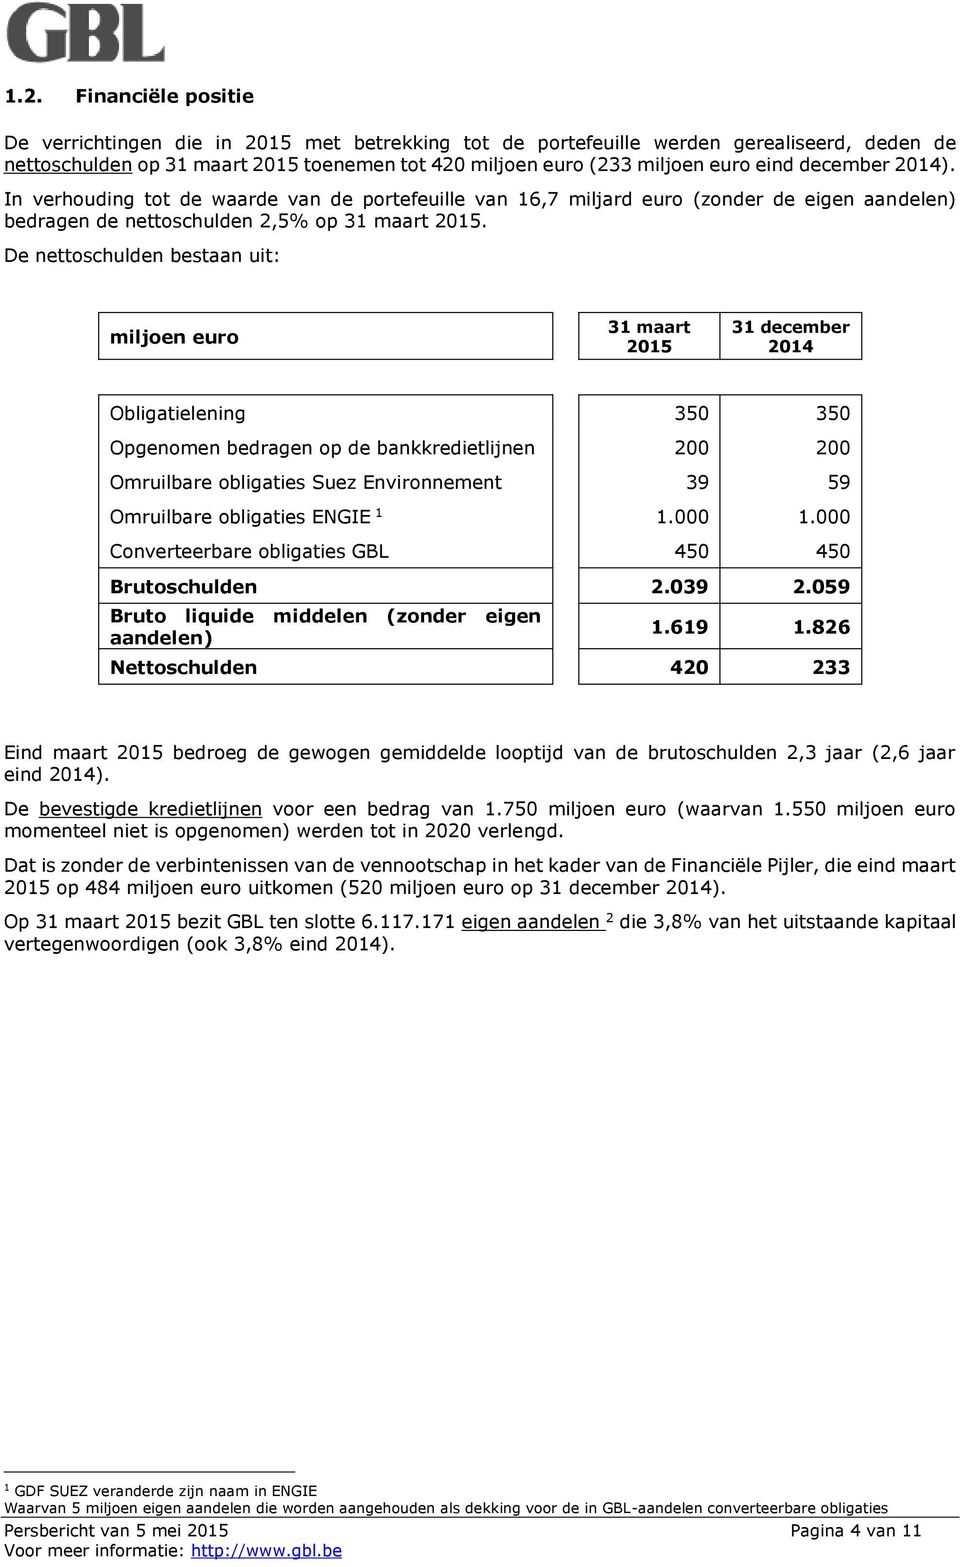 De nettoschulden bestaan uit: miljoen euro 31 maart 2015 31 december 2014 Obligatielening 350 350 Opgenomen bedragen op de bankkredietlijnen 200 200 Omruilbare obligaties Suez Environnement 39 59